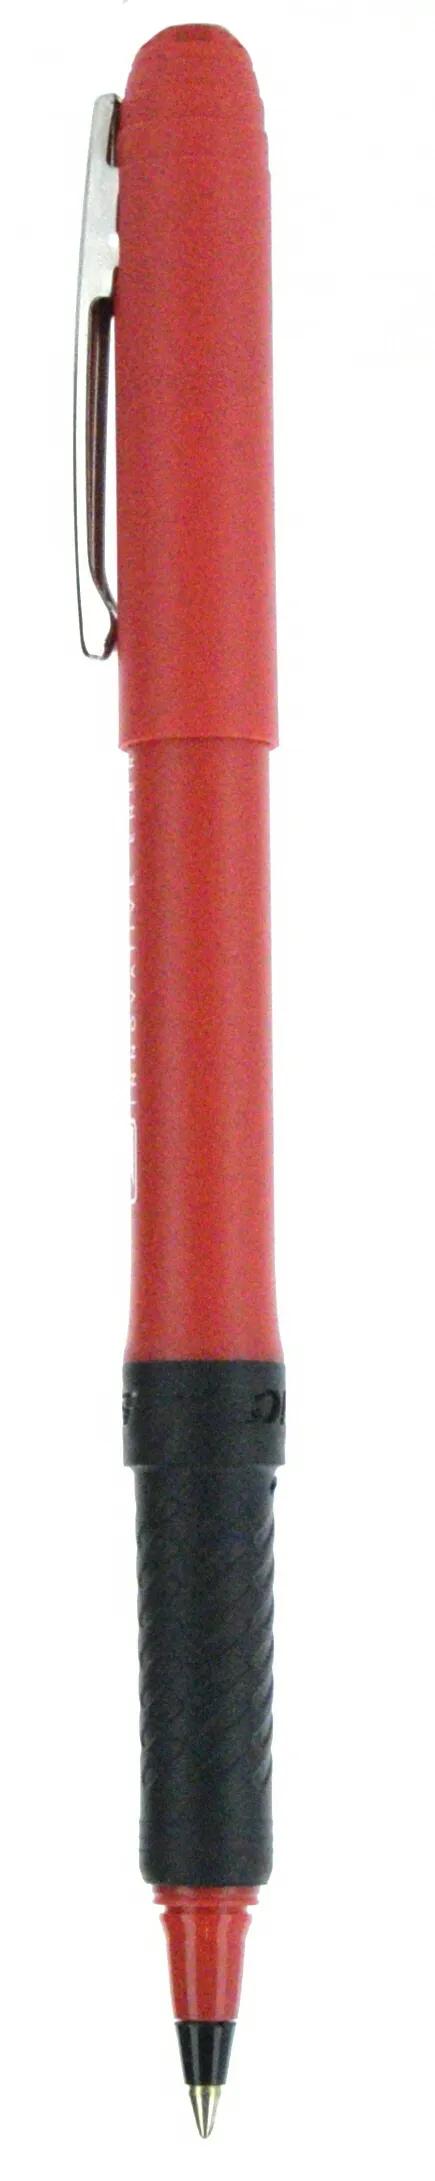 BIC® Grip Roller Pen 147 of 147